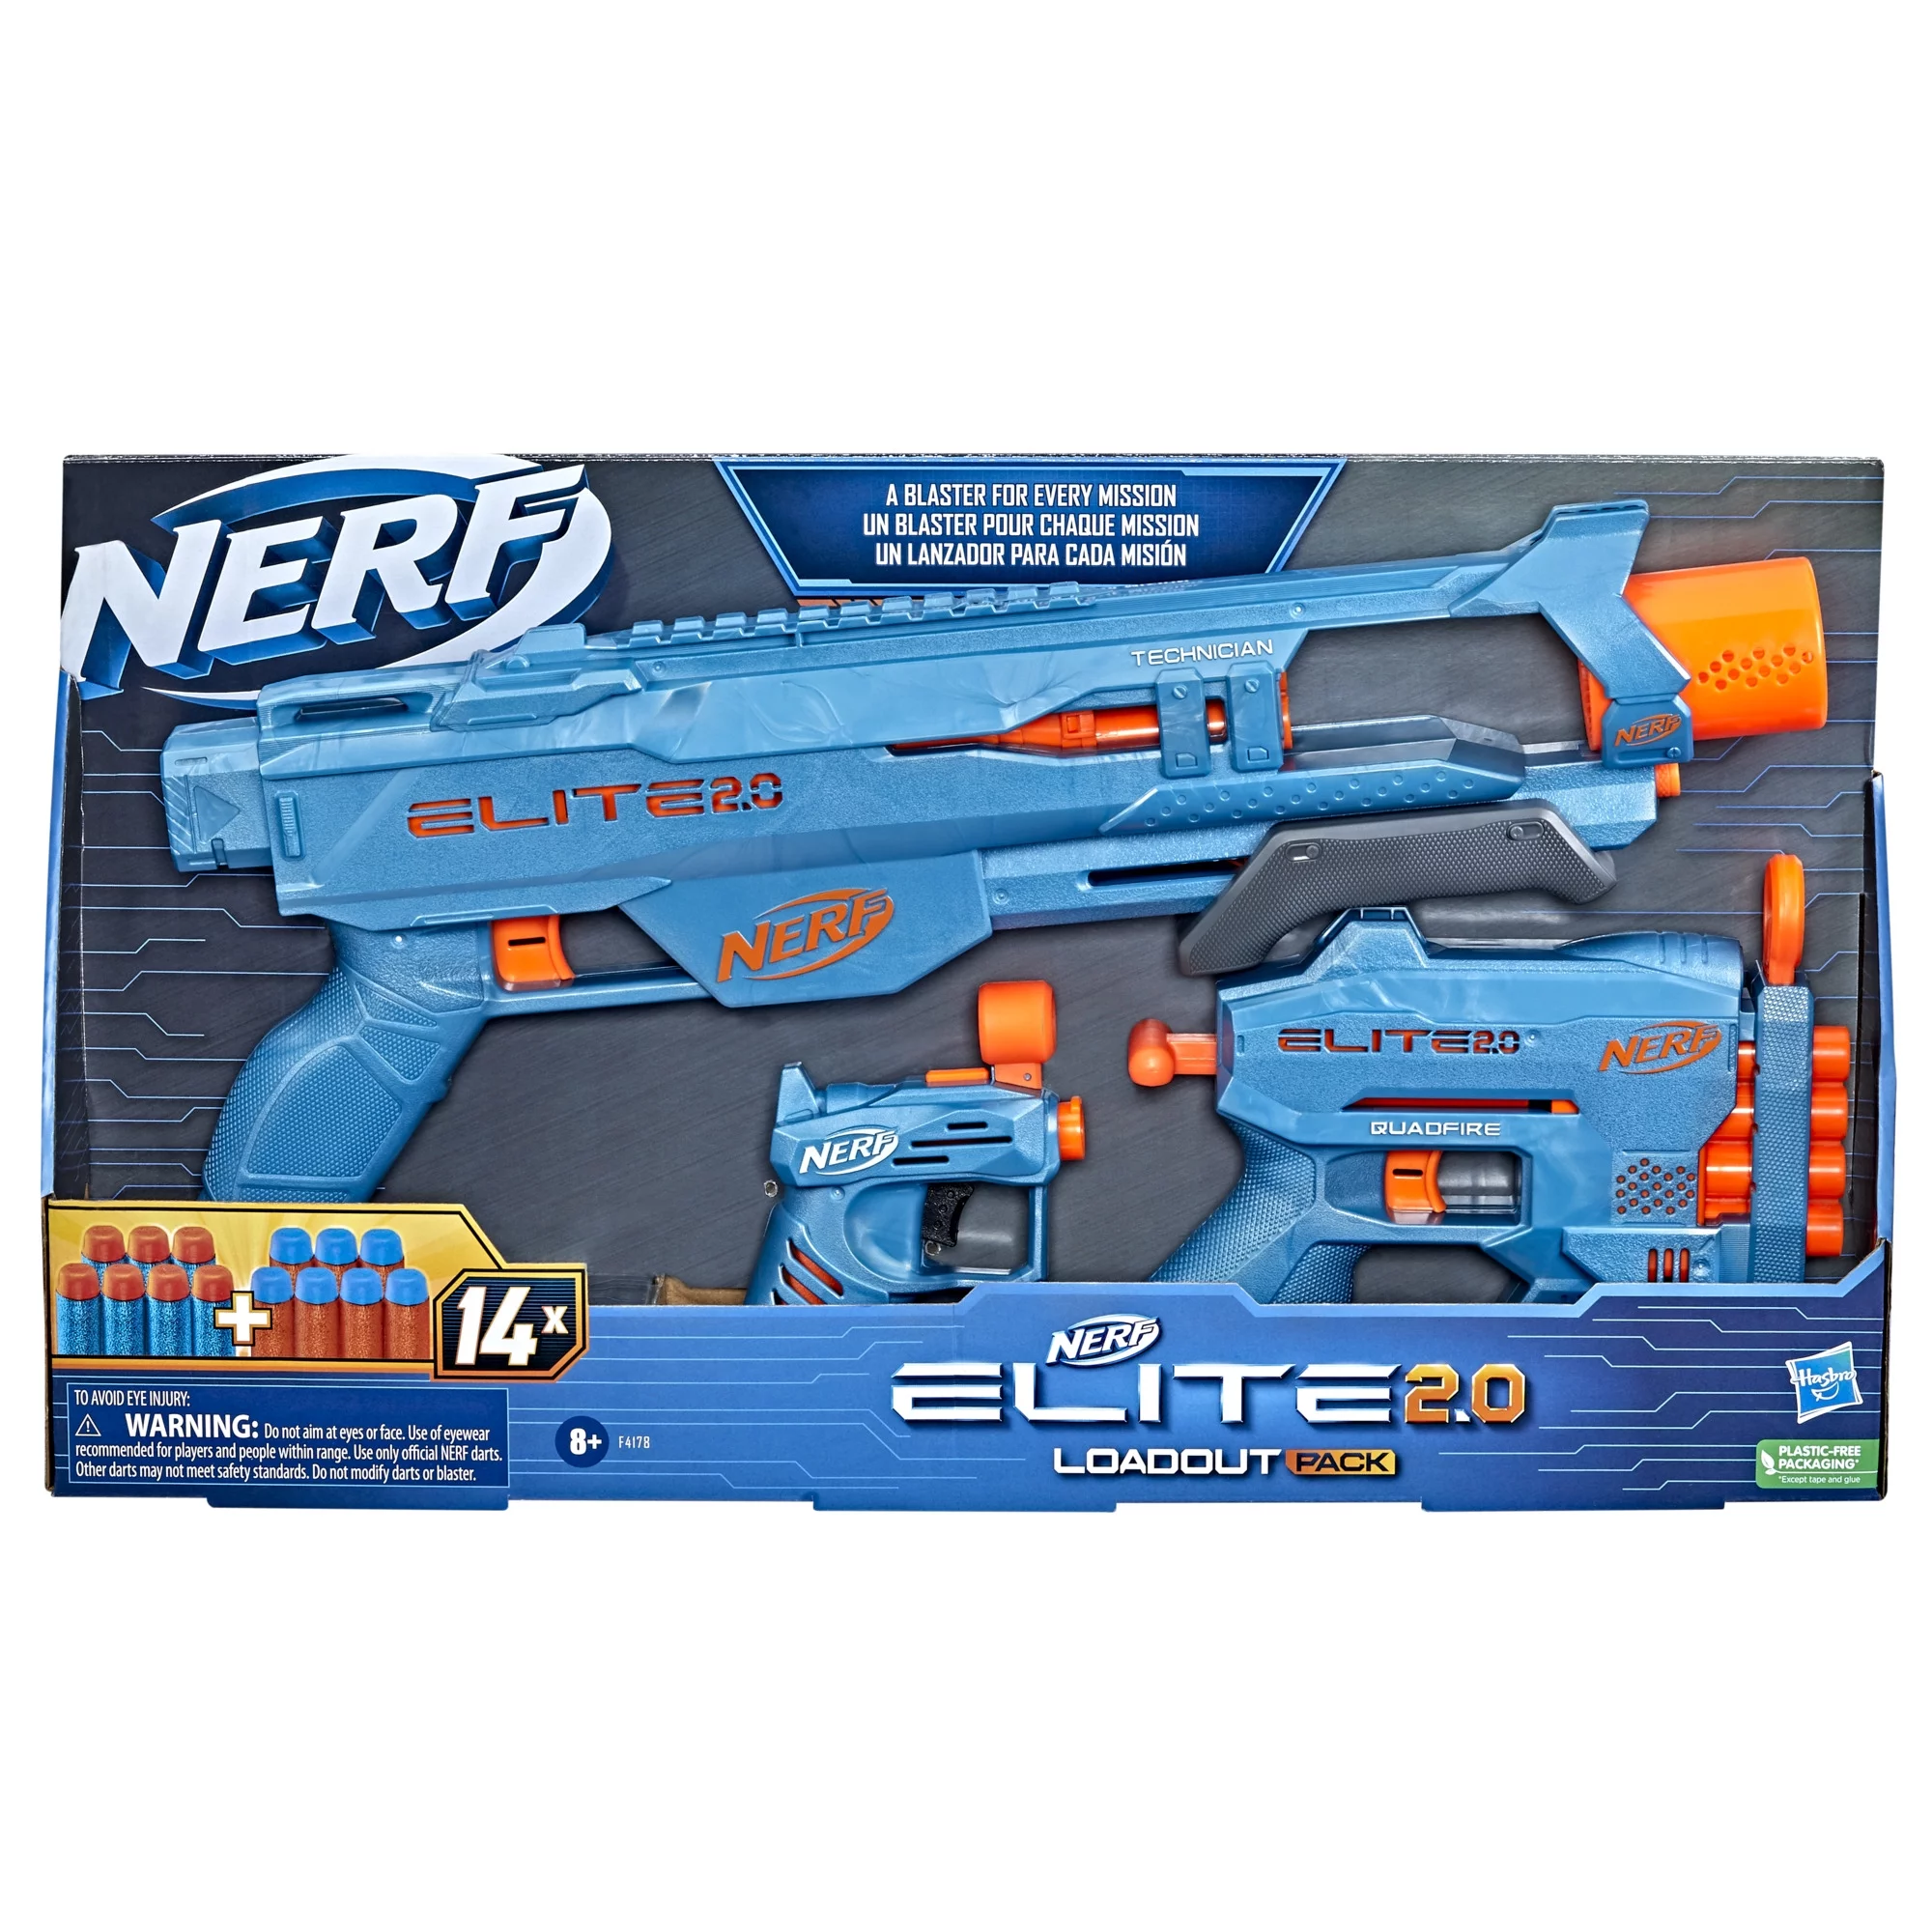 Nerf -VS- X-Shot Blaster Battle - The Nerf Elite 2.0 Eaglepoint -VS- T